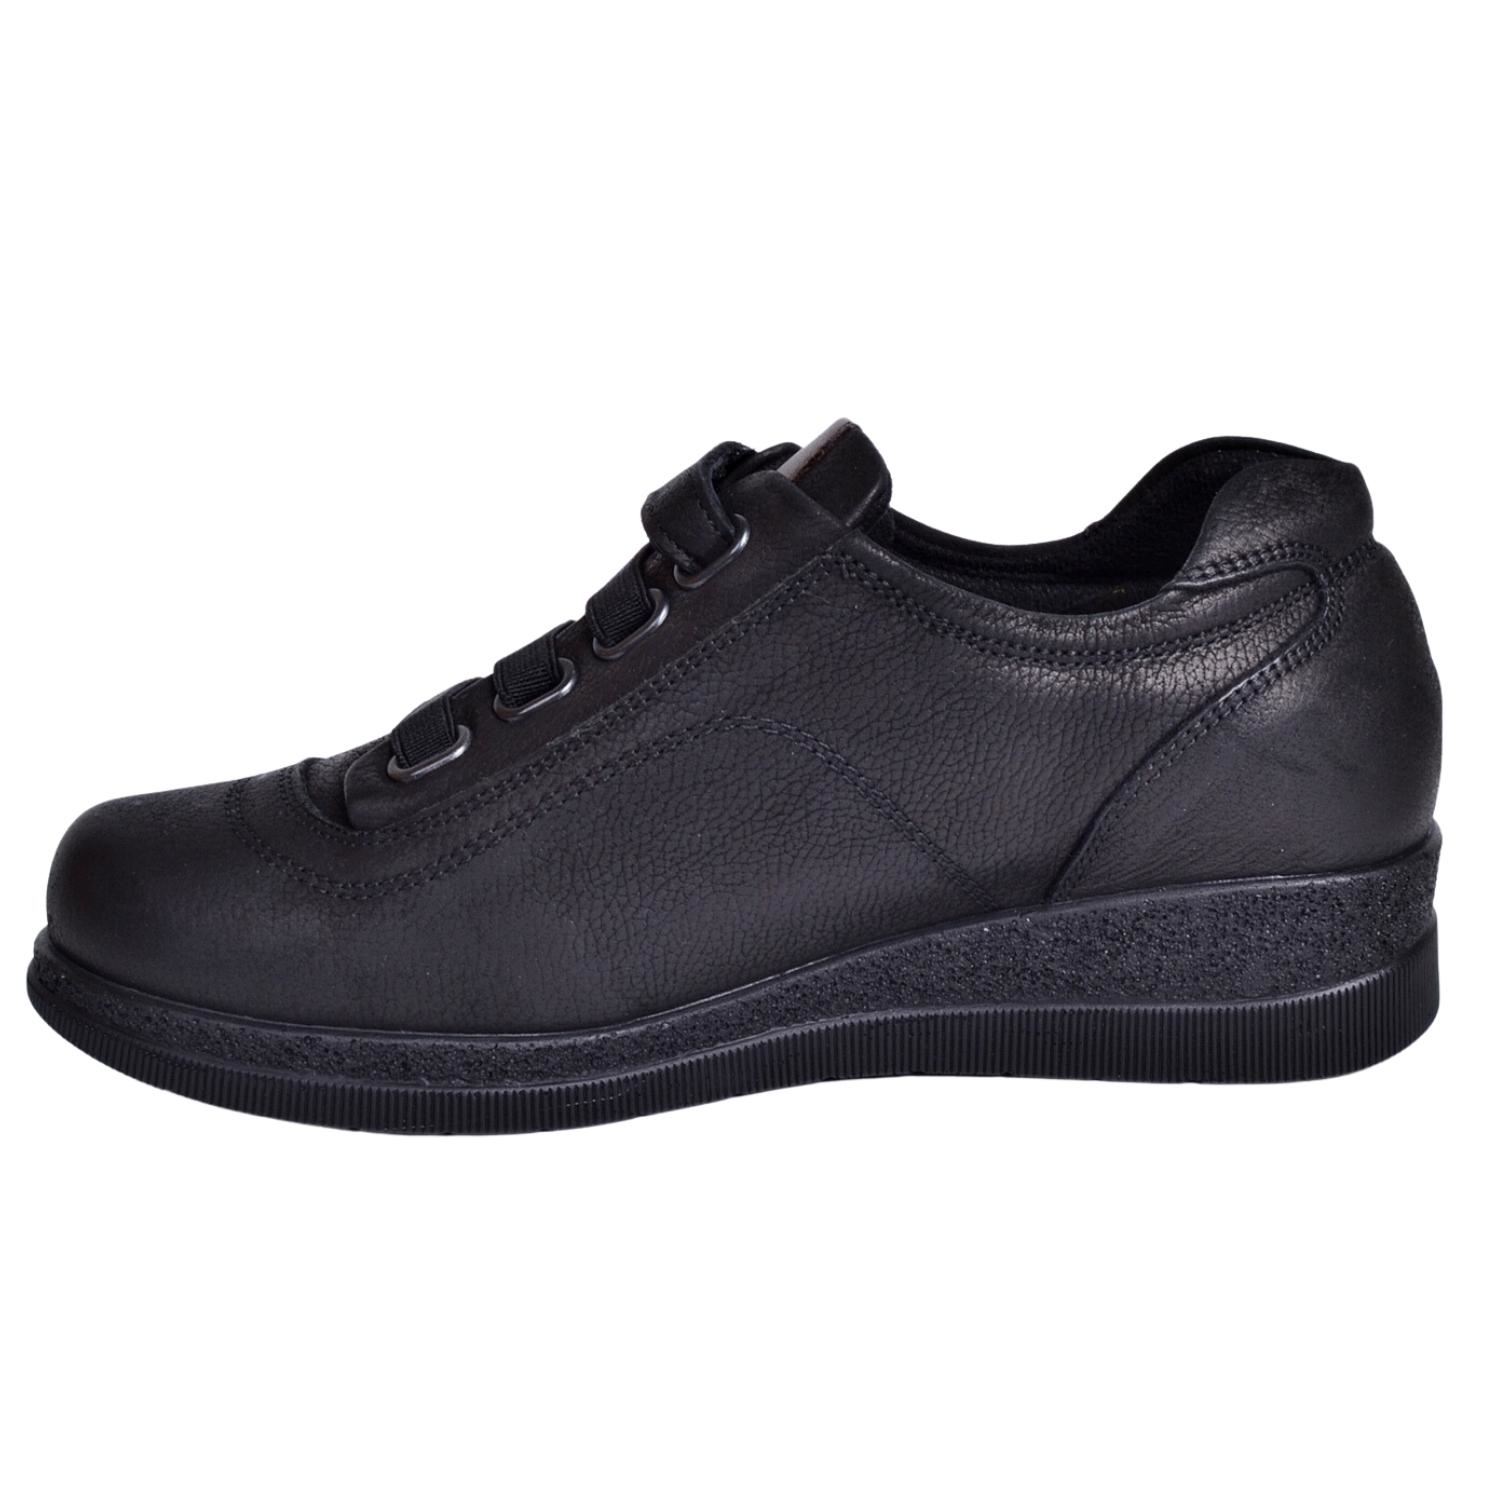 Mammamia D23KA-6030 Kadın Siyah Nubuk Deri Ayakkabı